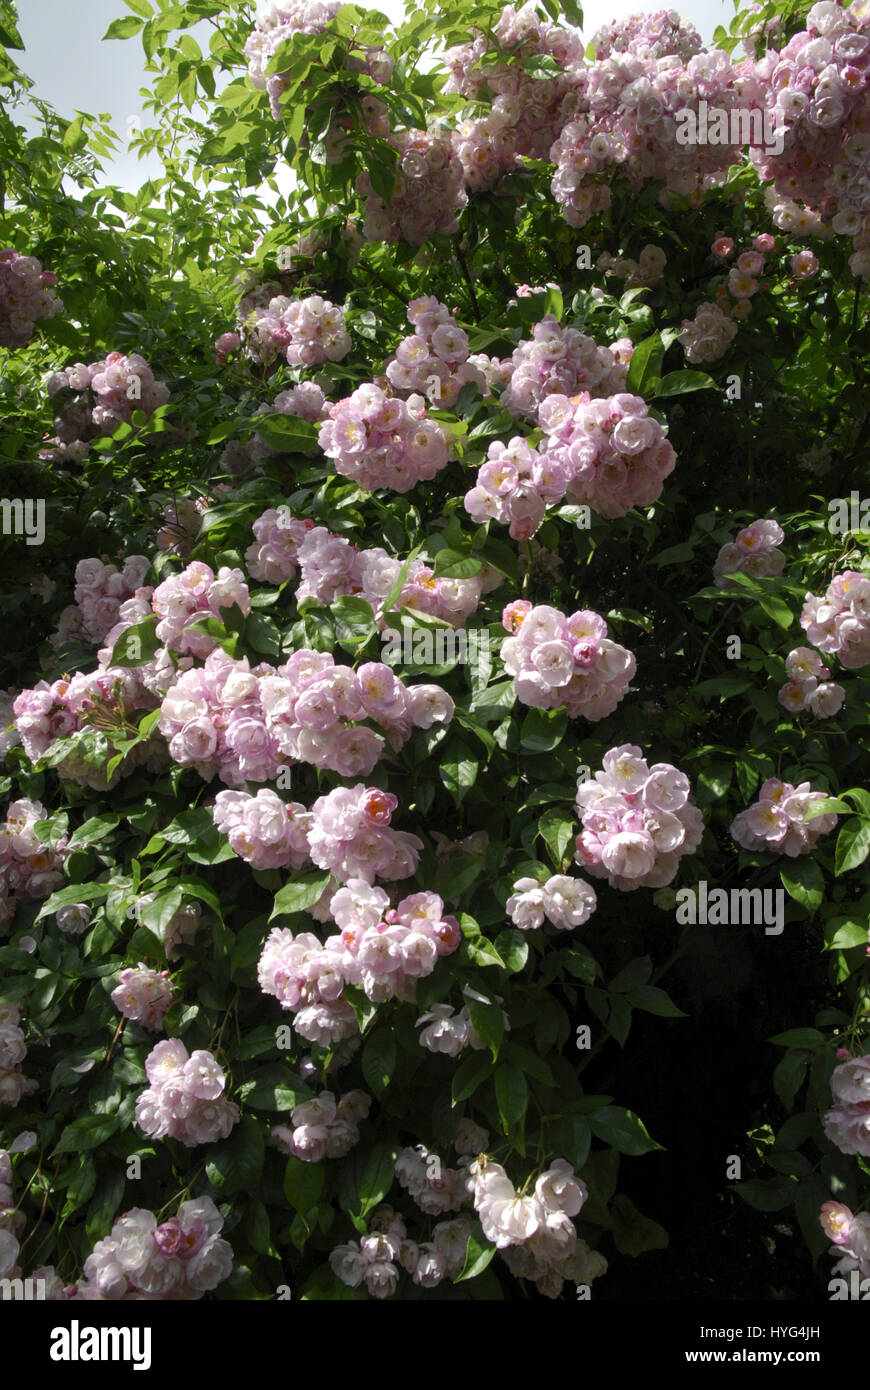 Rambling Rose con flores de color rosa. Variedad incierto Foto de stock